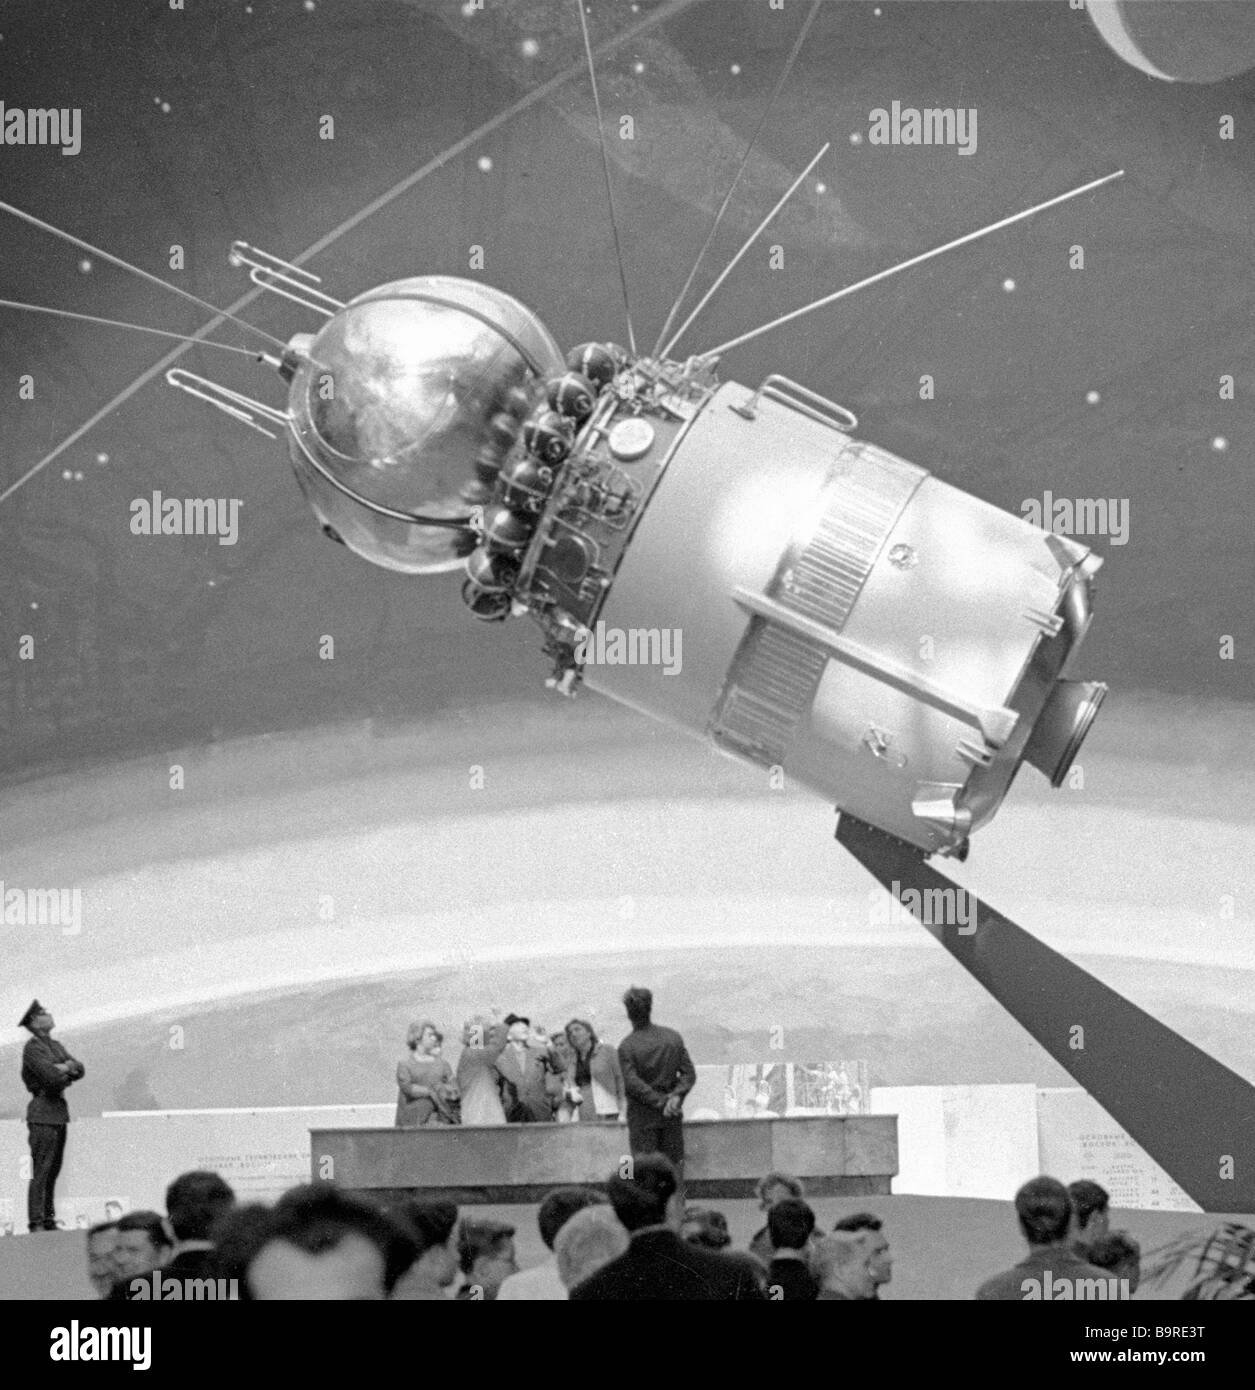 Первый в мире многоместный космический корабль Восход-1